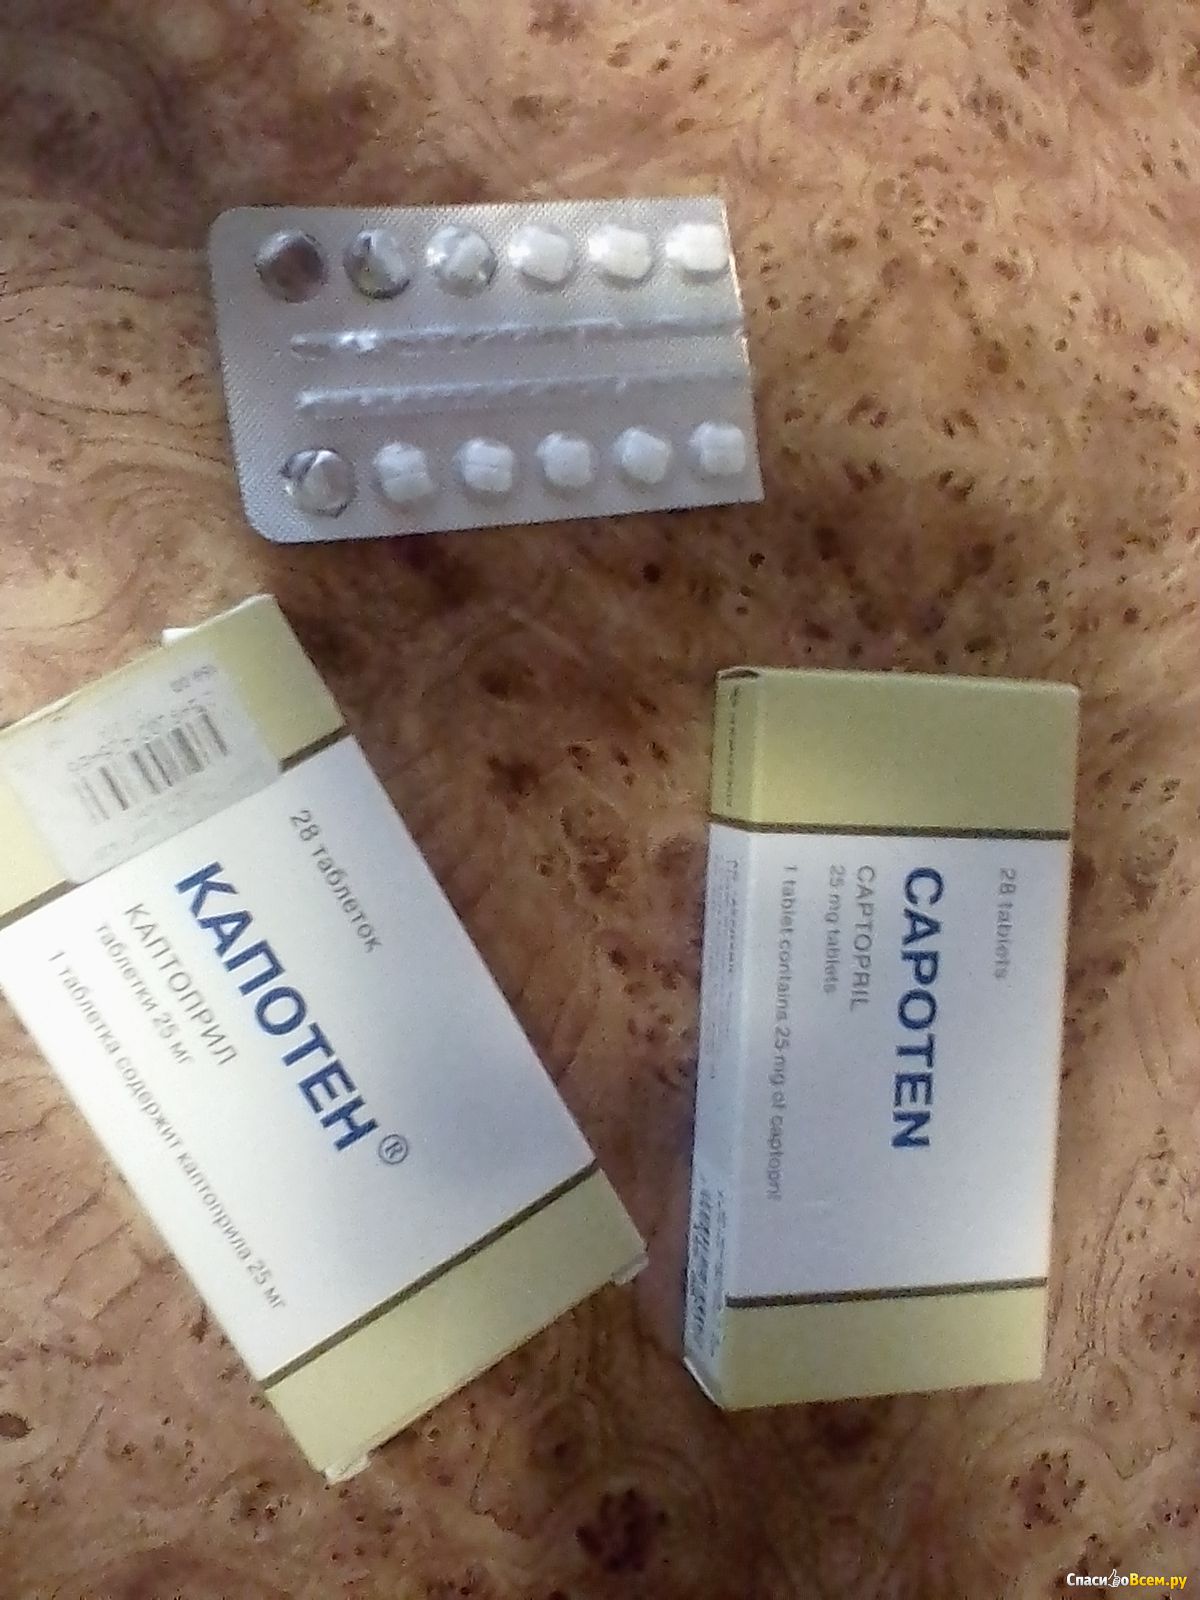 Капотен таблетки от давления фото